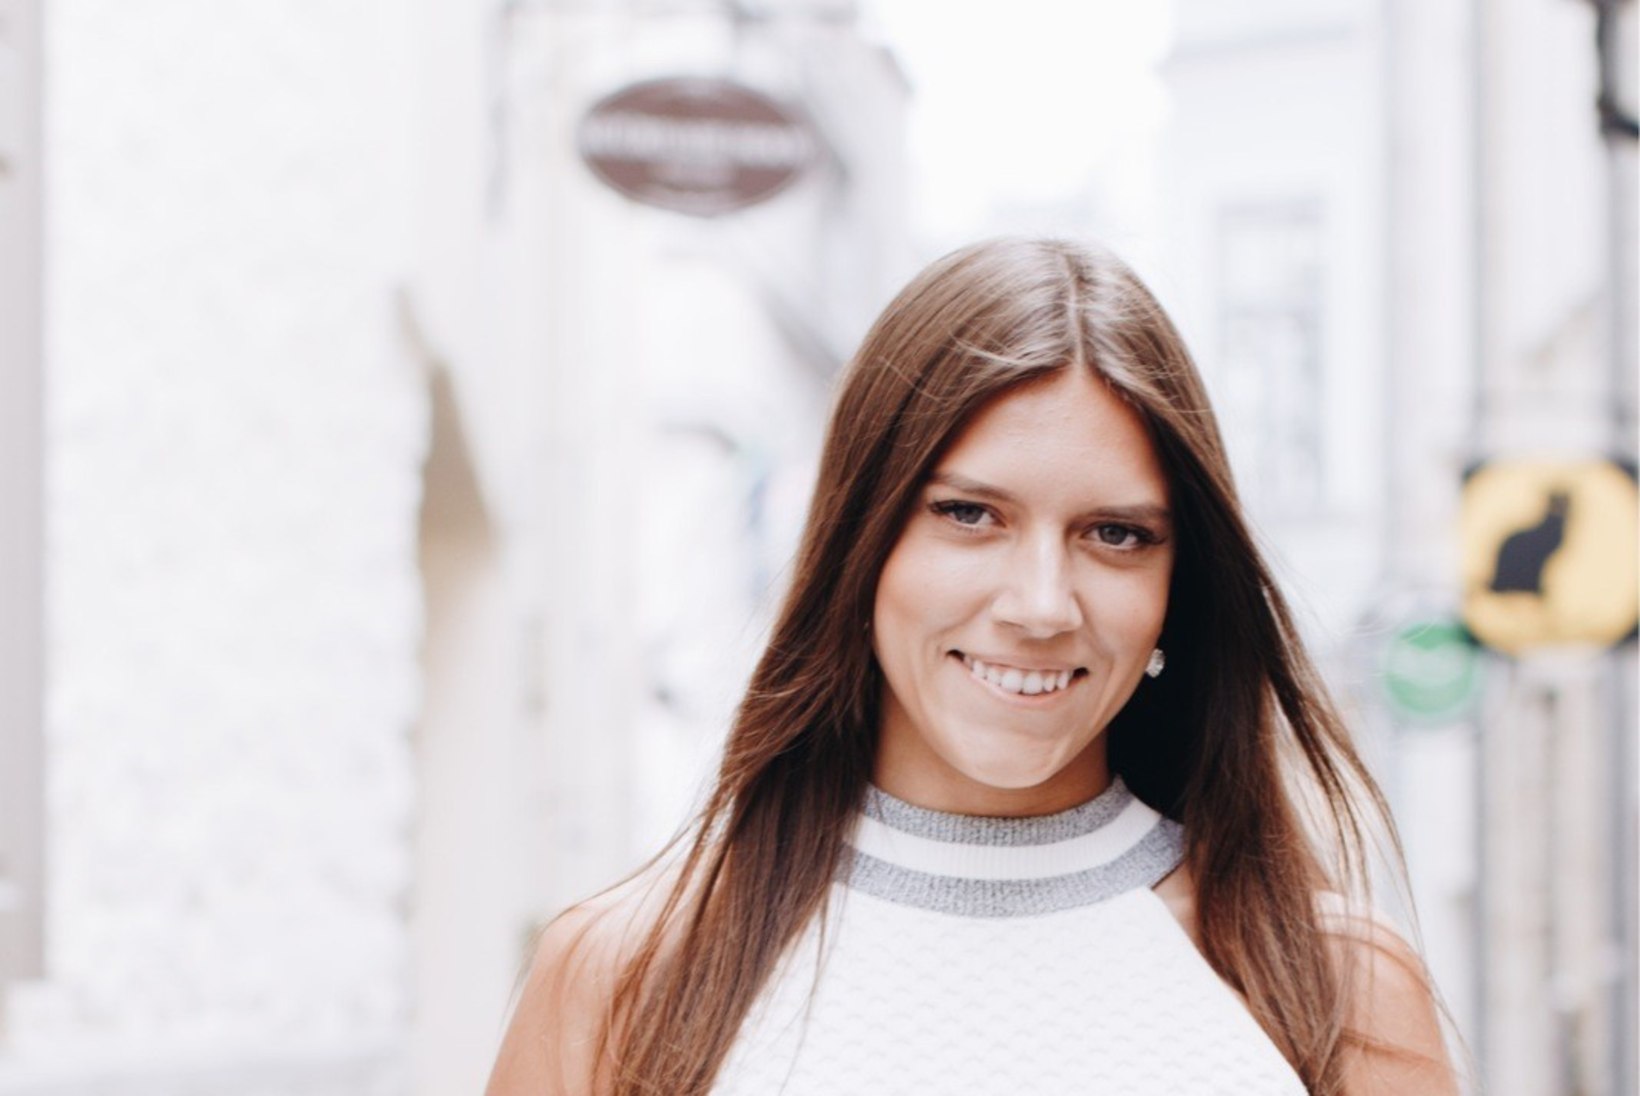 ÕL VIDEO | Anastassia Kovalenko käis tänavatel kampaaniat tegemas